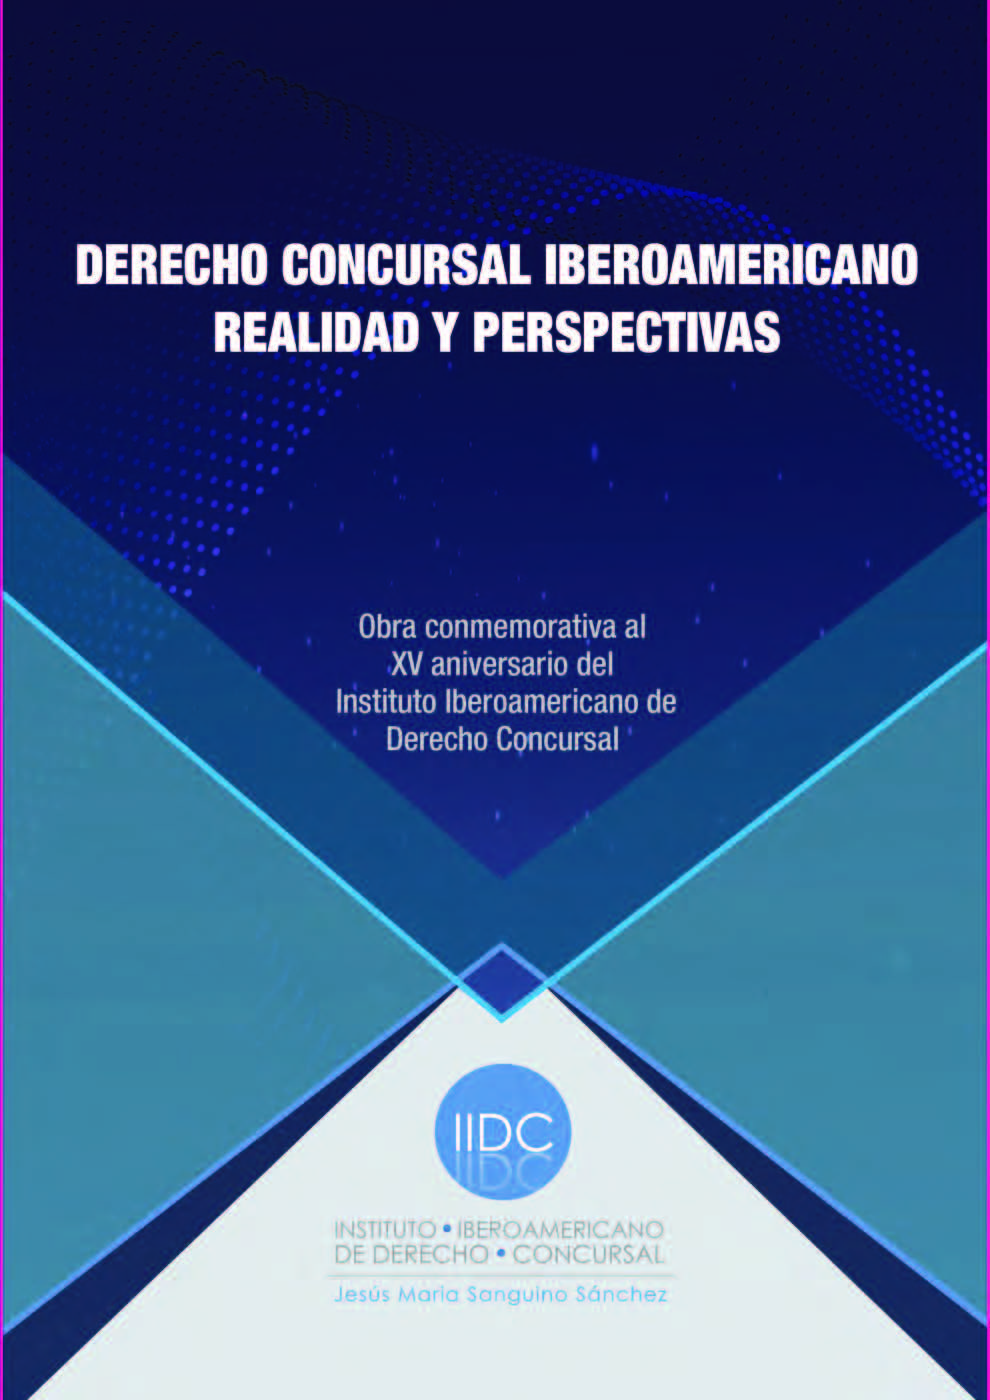 Obra conmemorativa al XV aniversario del IIDC